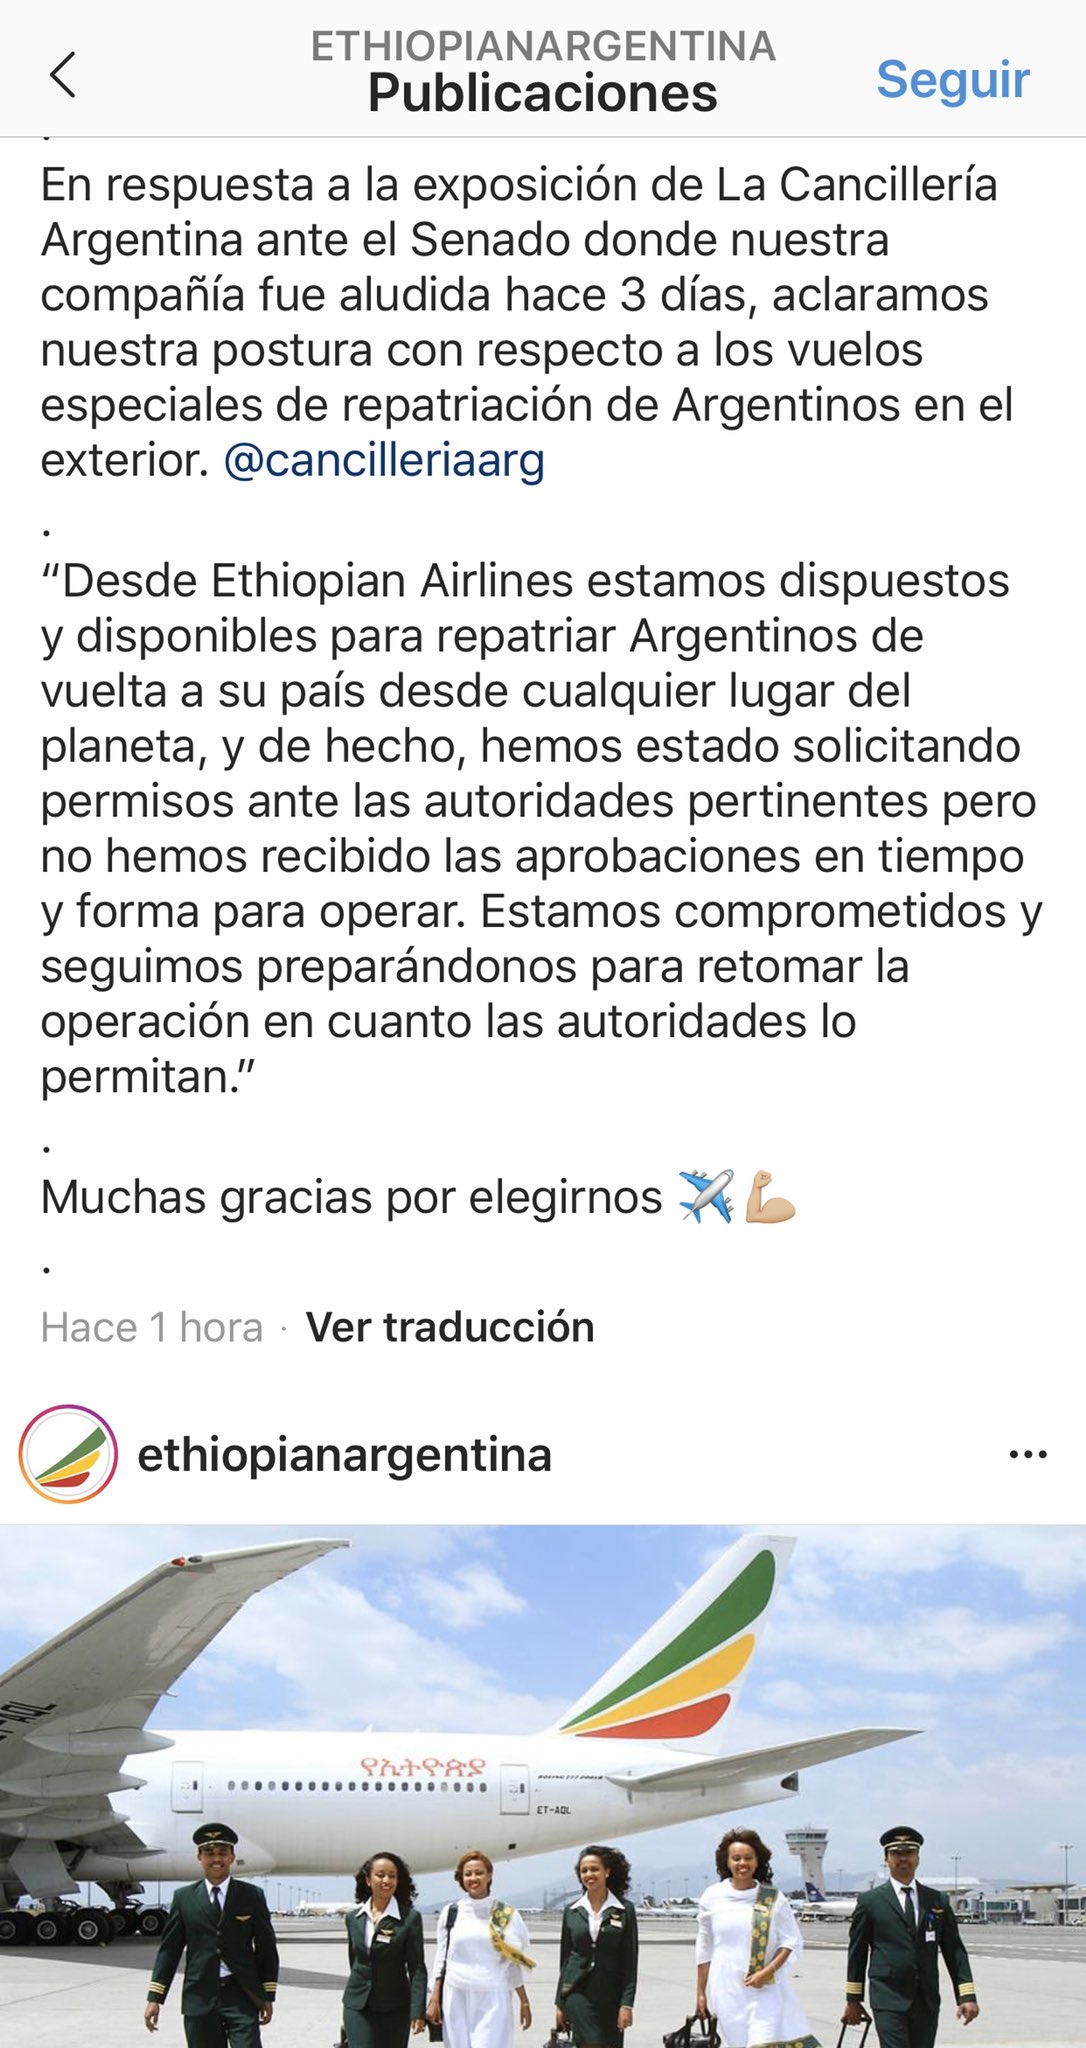 Muchachos el relato es solo para la Argentina en otros países no funcionan: Una aerolínea desmiente al canciller Solá